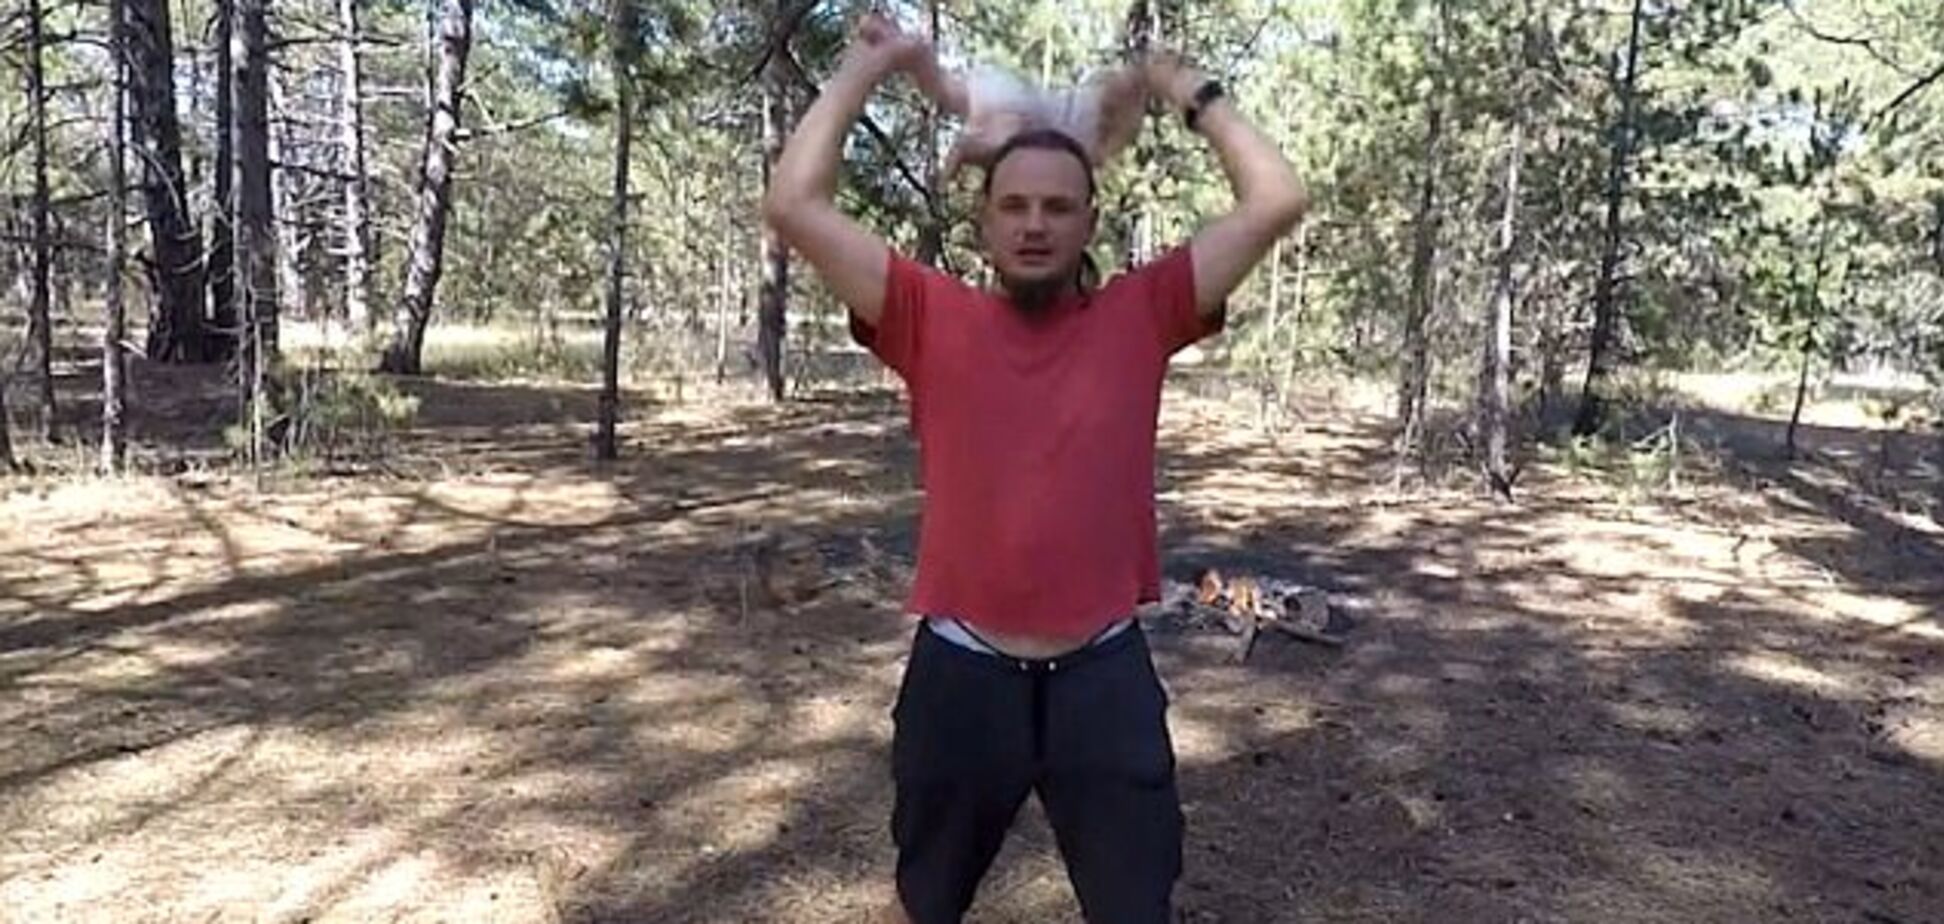 Отец года: украинец раскручивал и подбрасывал младенца, делая из него 'астронавта'